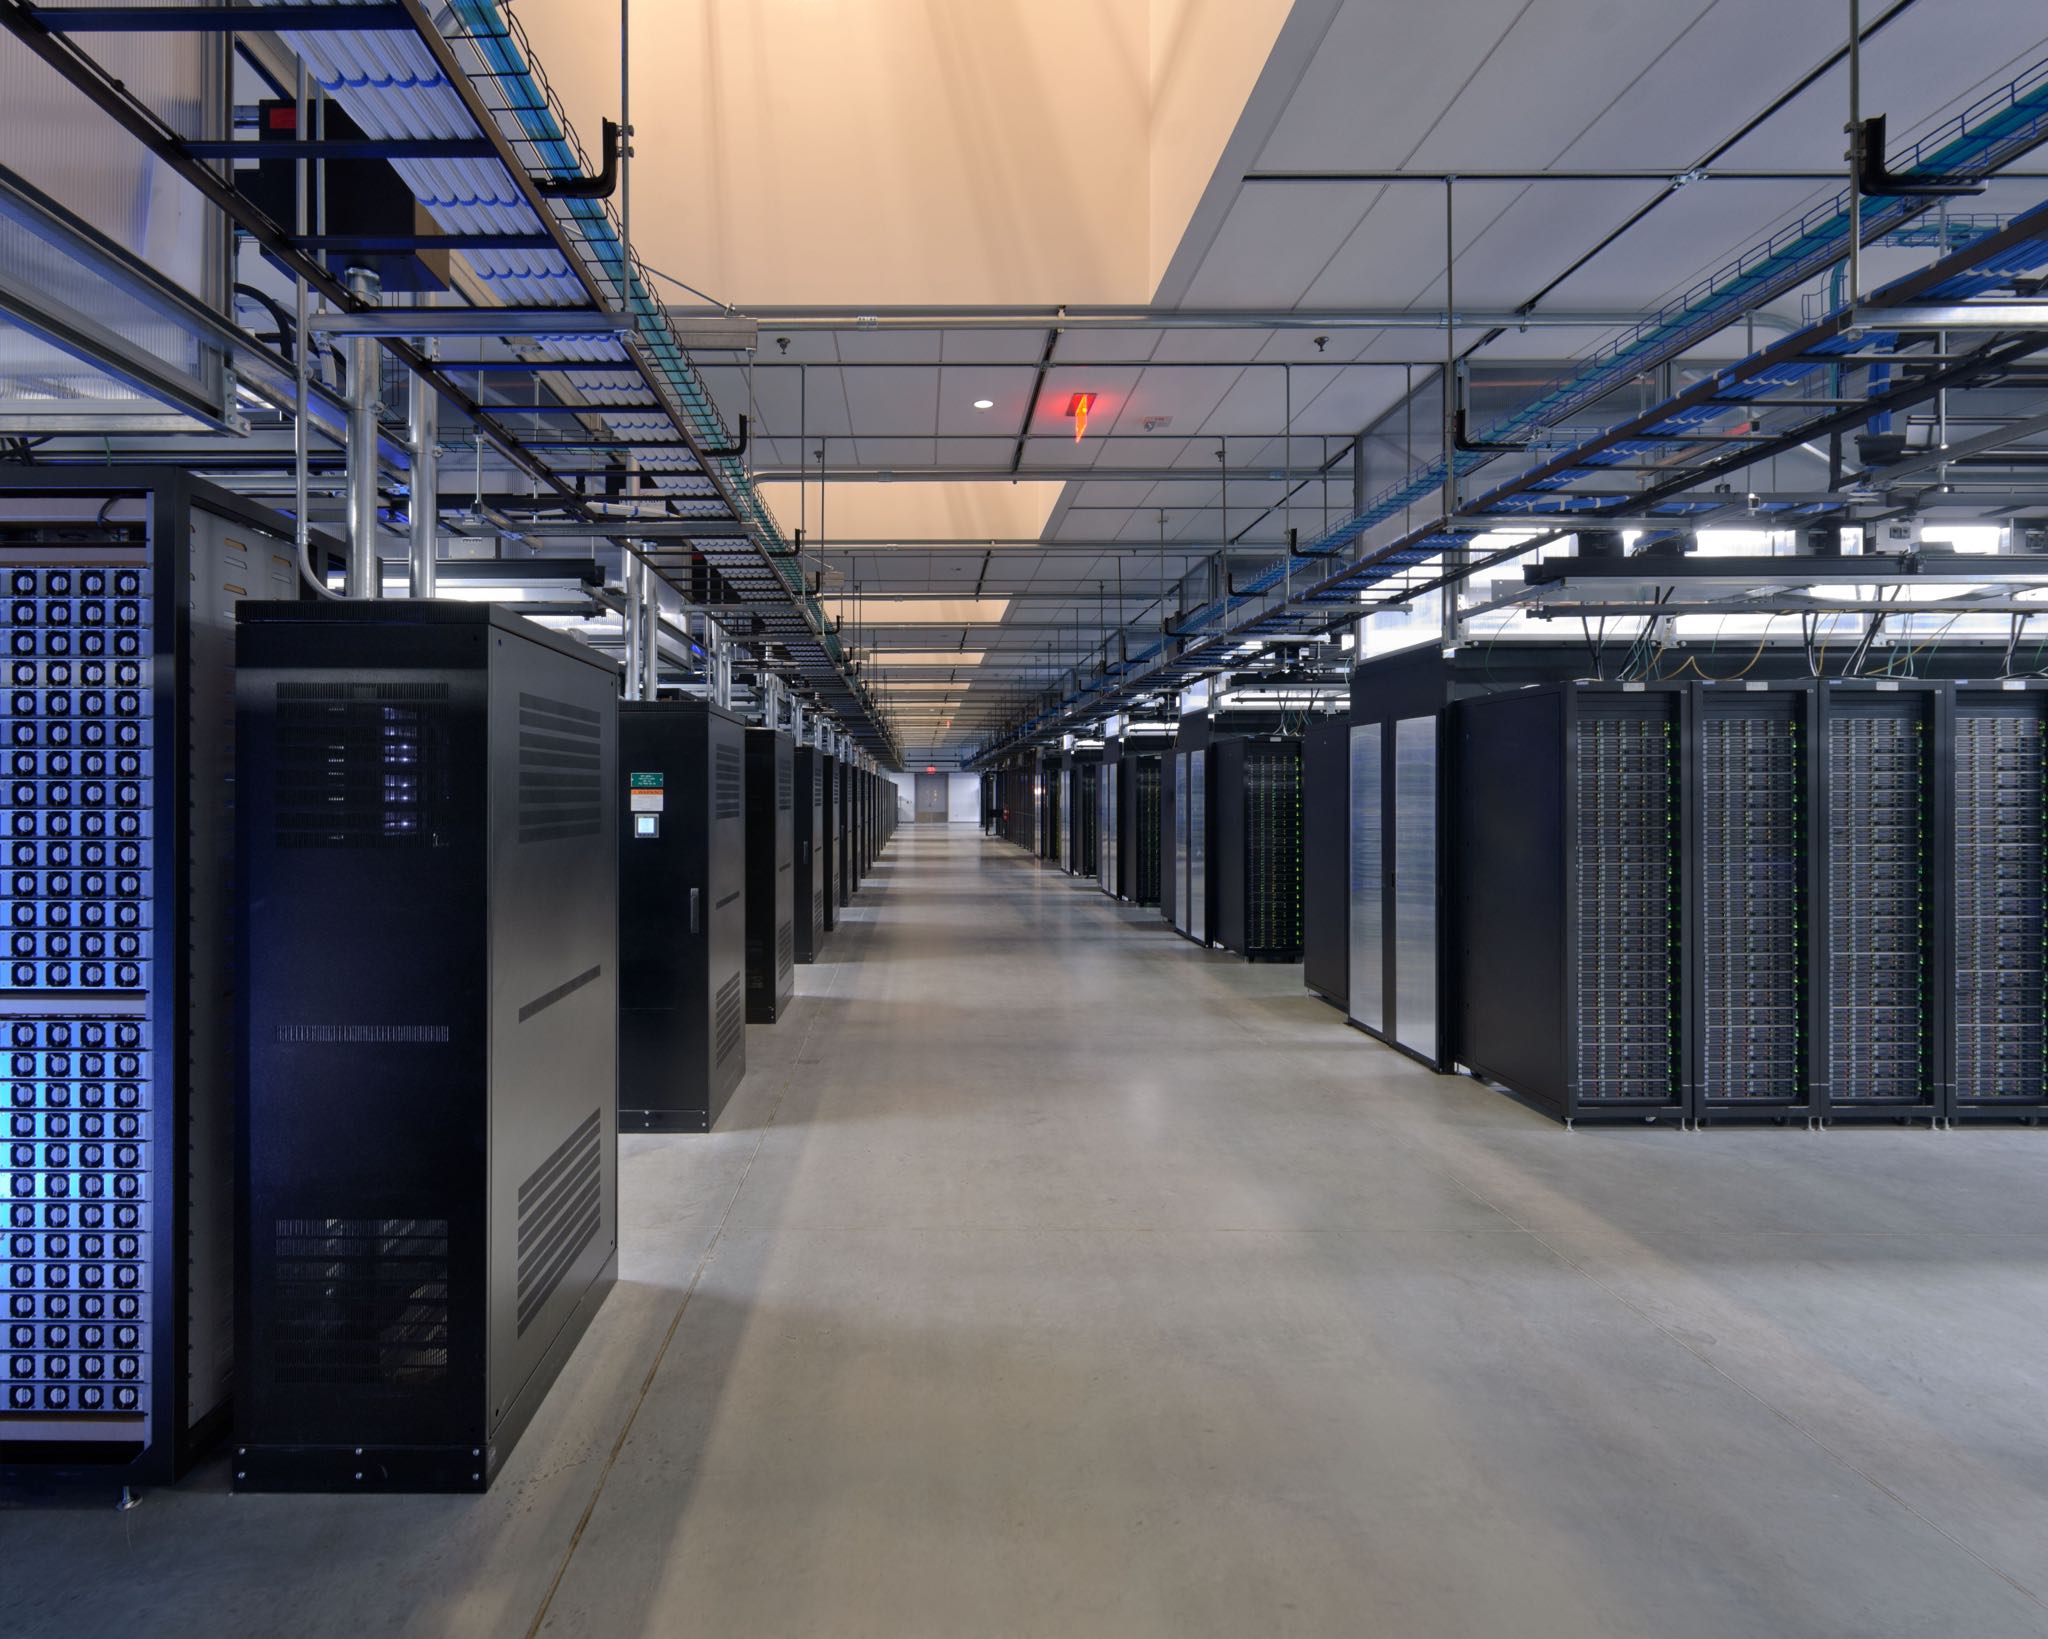 Facebook Prineville data center server room image